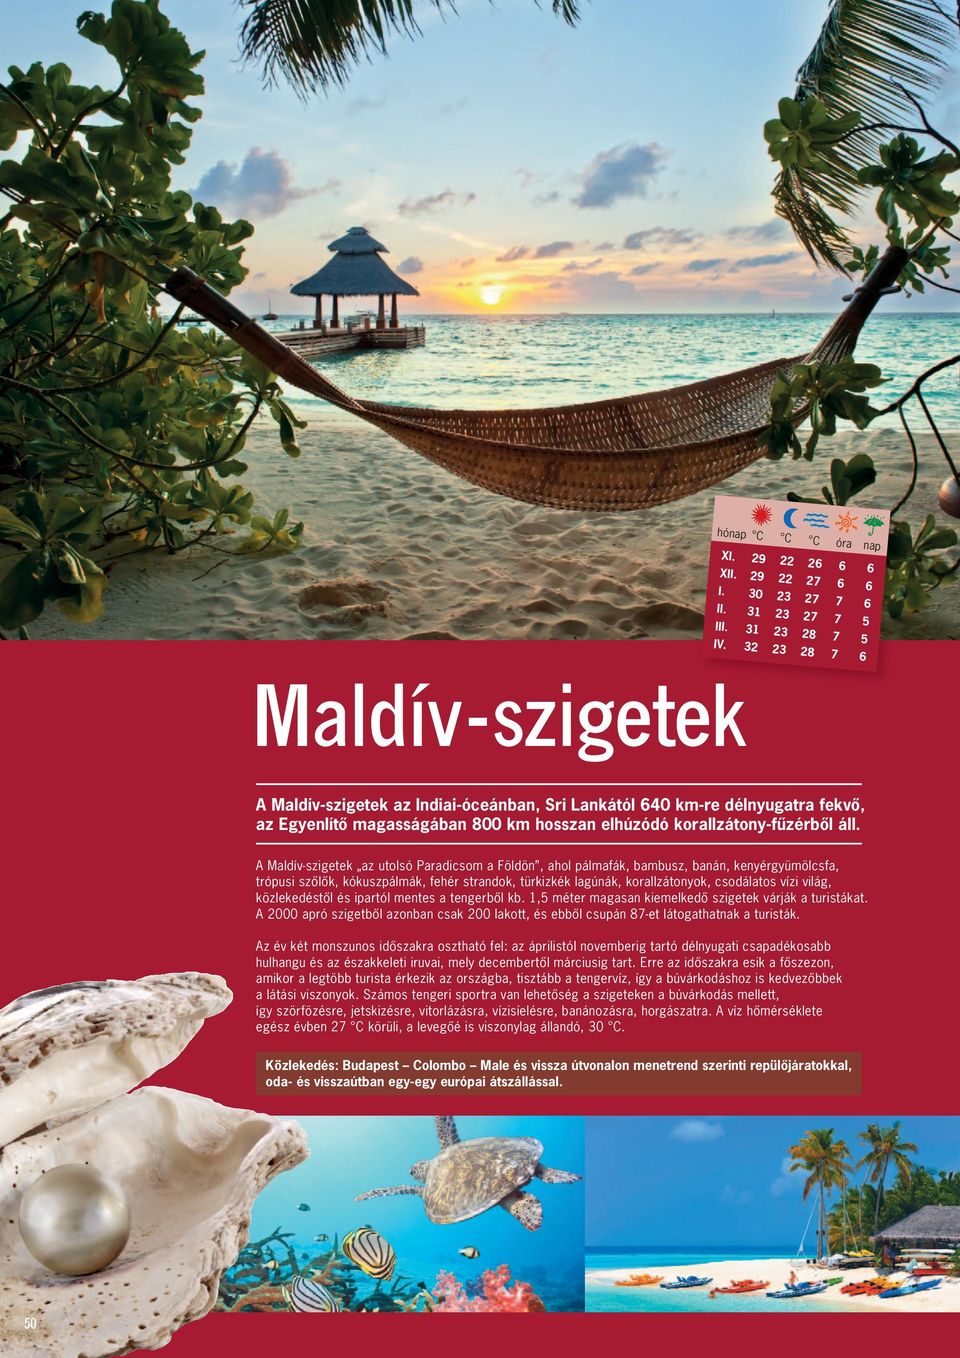 A Maldív-szigetek az utolsó Para dicsom a Földön, ahol pálmafák, bambusz, banán, kenyér gyümölcsfa, trópusi szôlôk, kókuszpálmák, fehér strandok, türkizkék lagúnák, korall zátonyok, csodálatos vízi